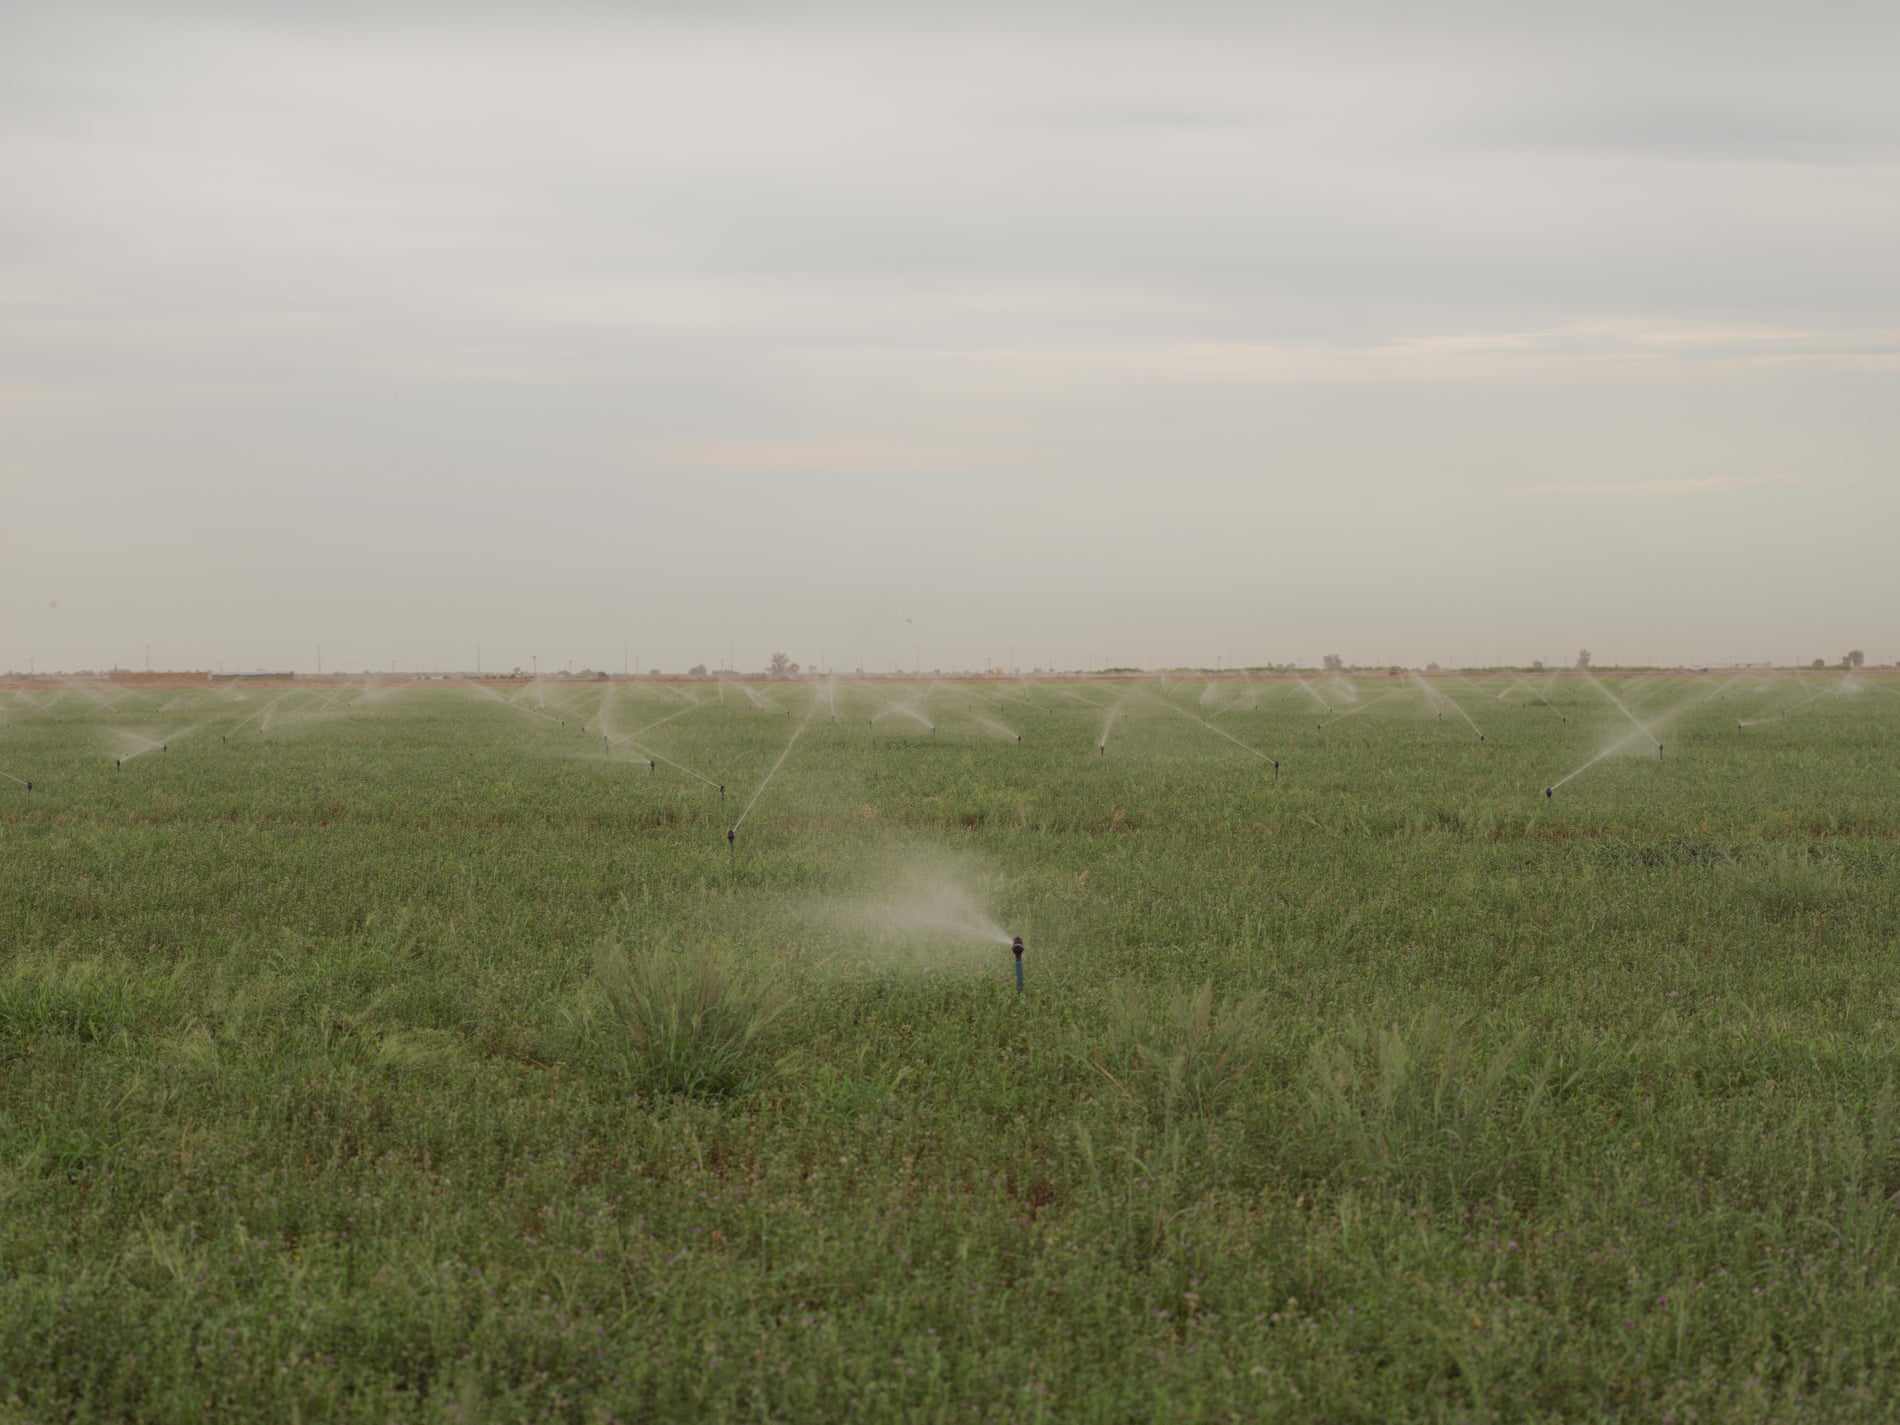 Sprinklers watering crops